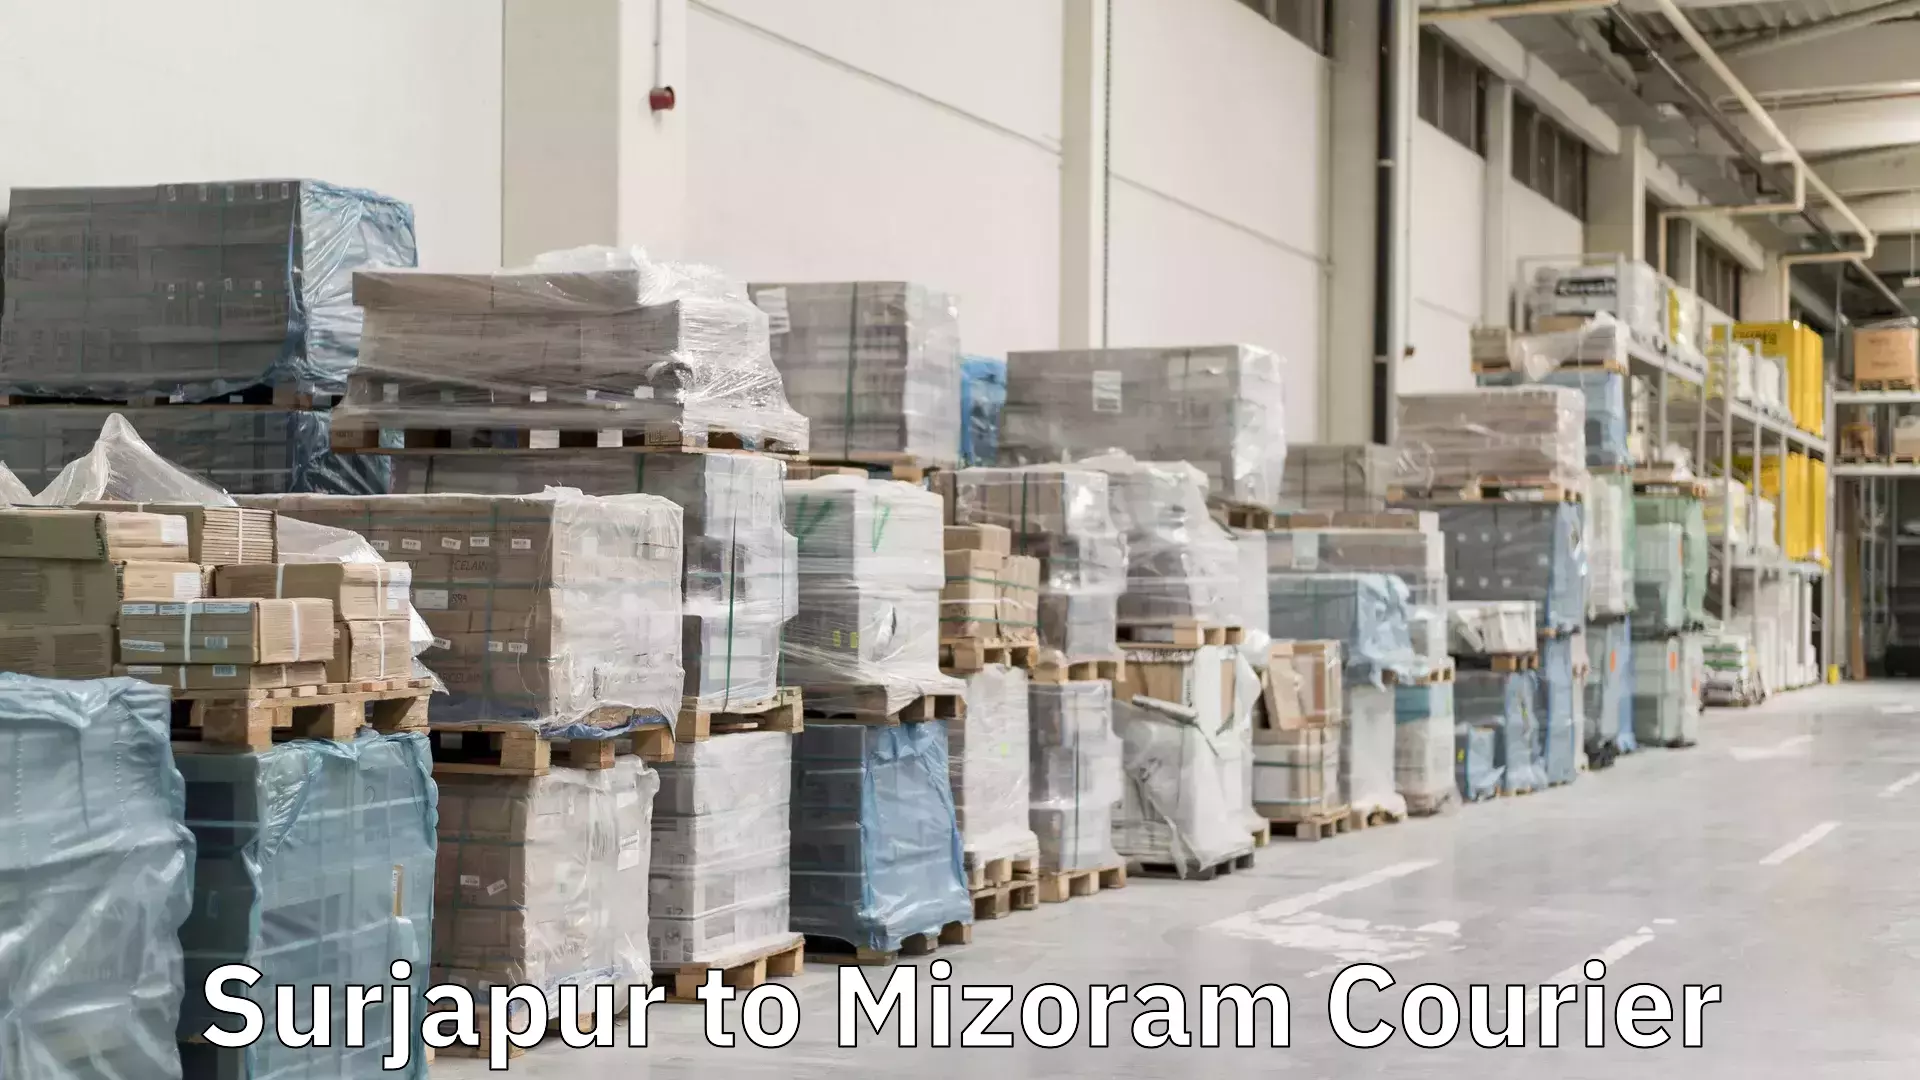 Door-to-door freight service Surjapur to Mizoram